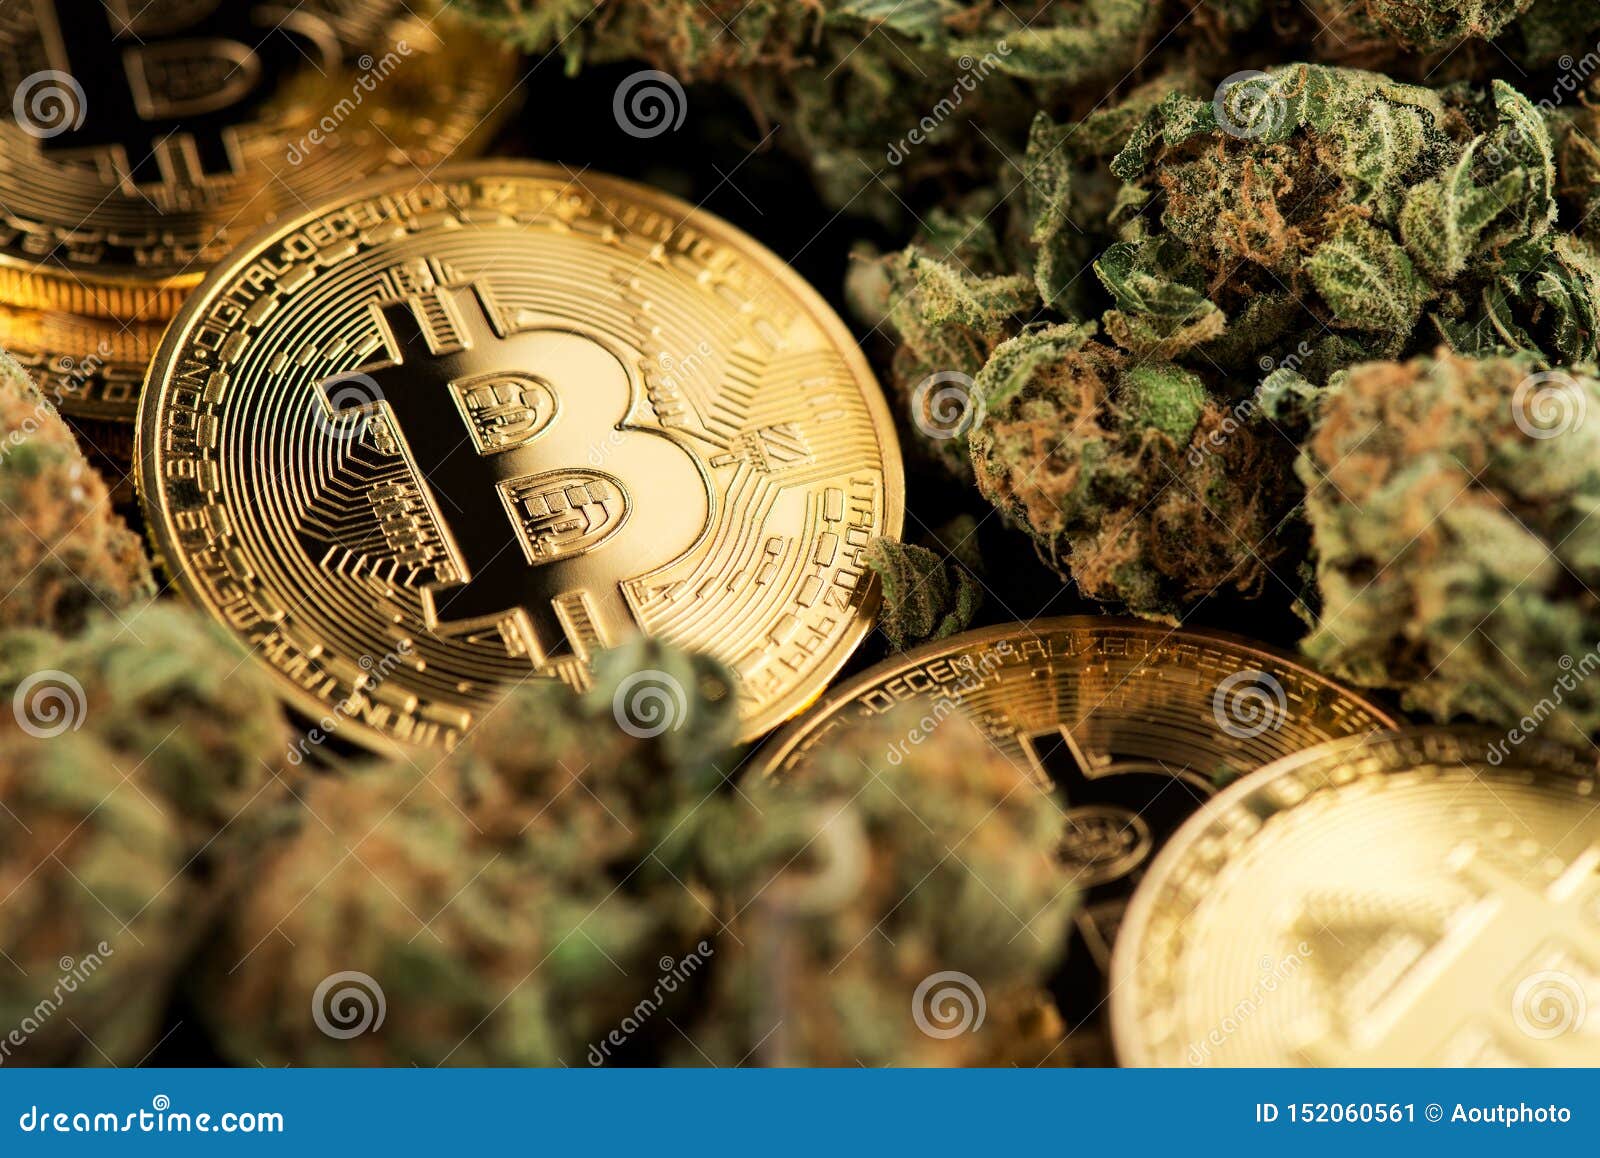 Cannabis coins crypto buy cred crypto